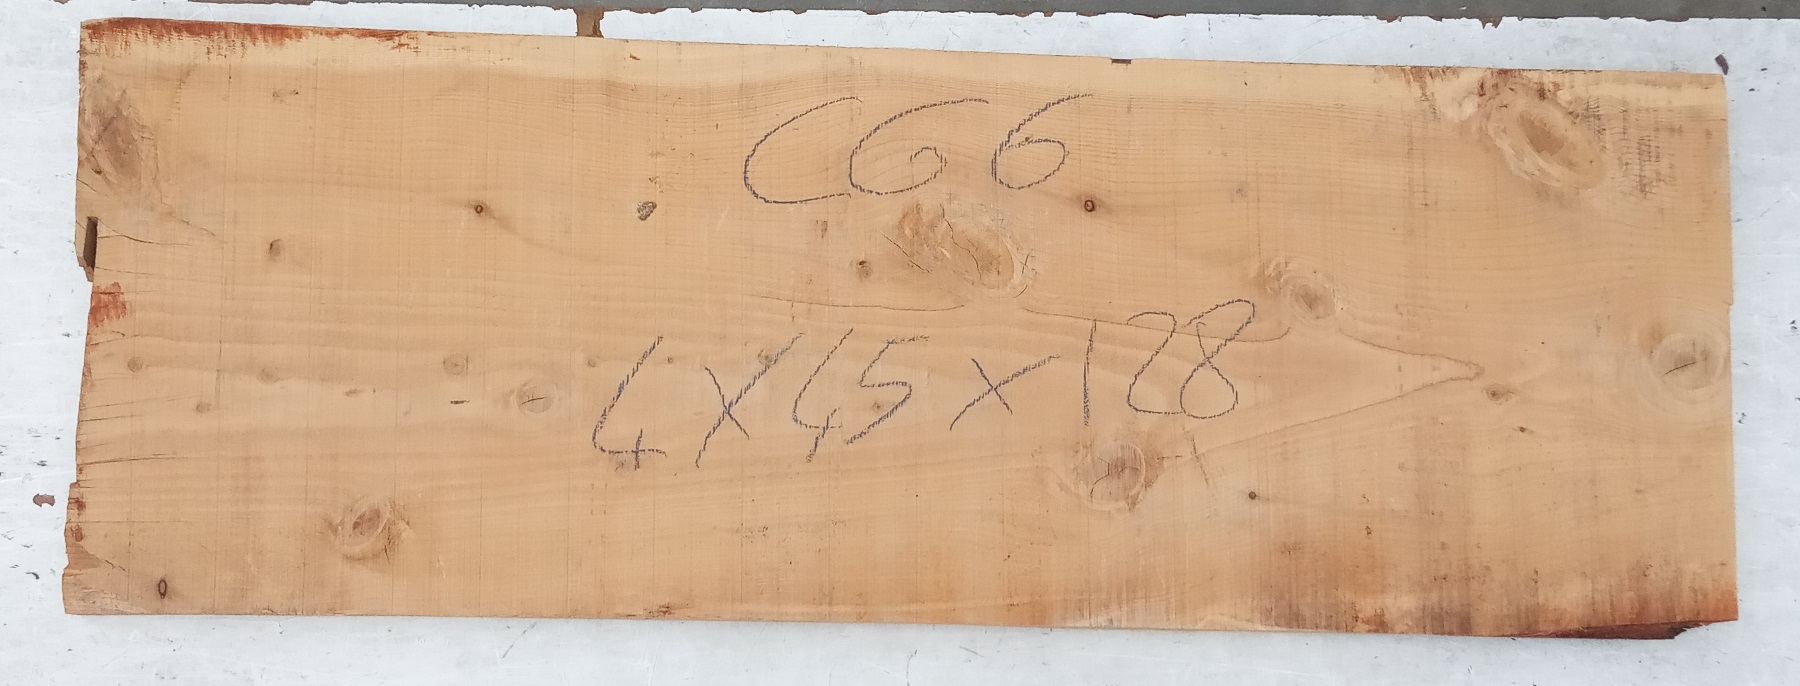 Tavola di Cedro Grezza - Spessore 40 mm – wood4you